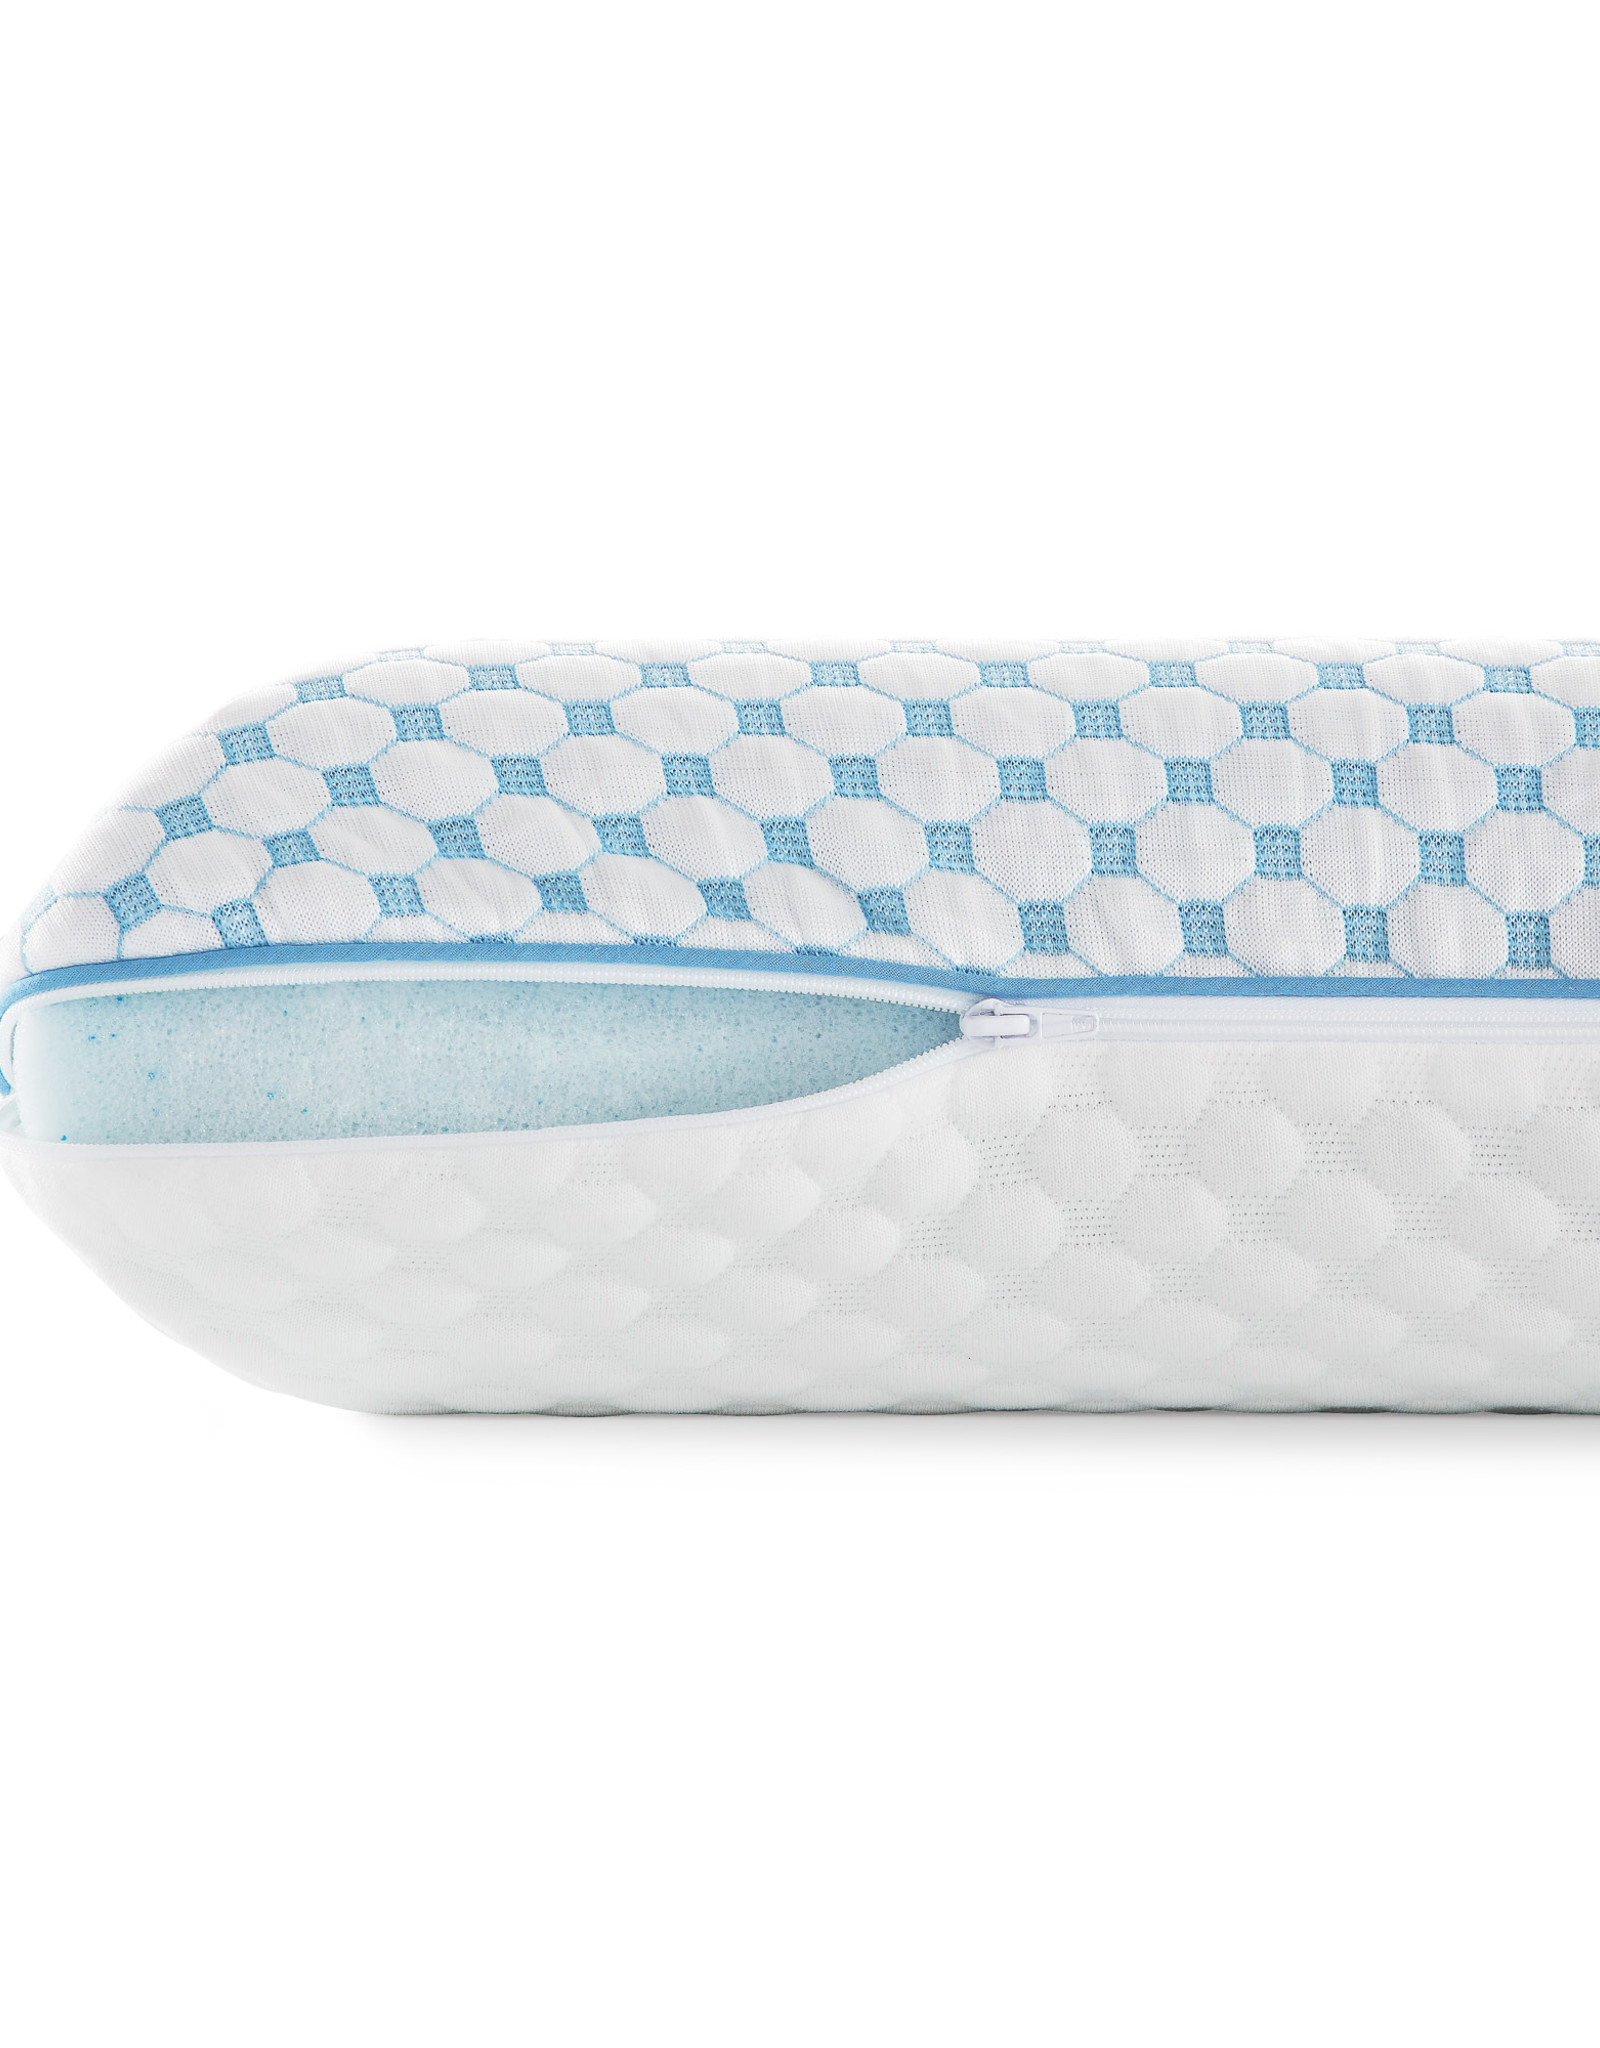 Gel Memory Foam Pillow + Reversible Cooling Cover